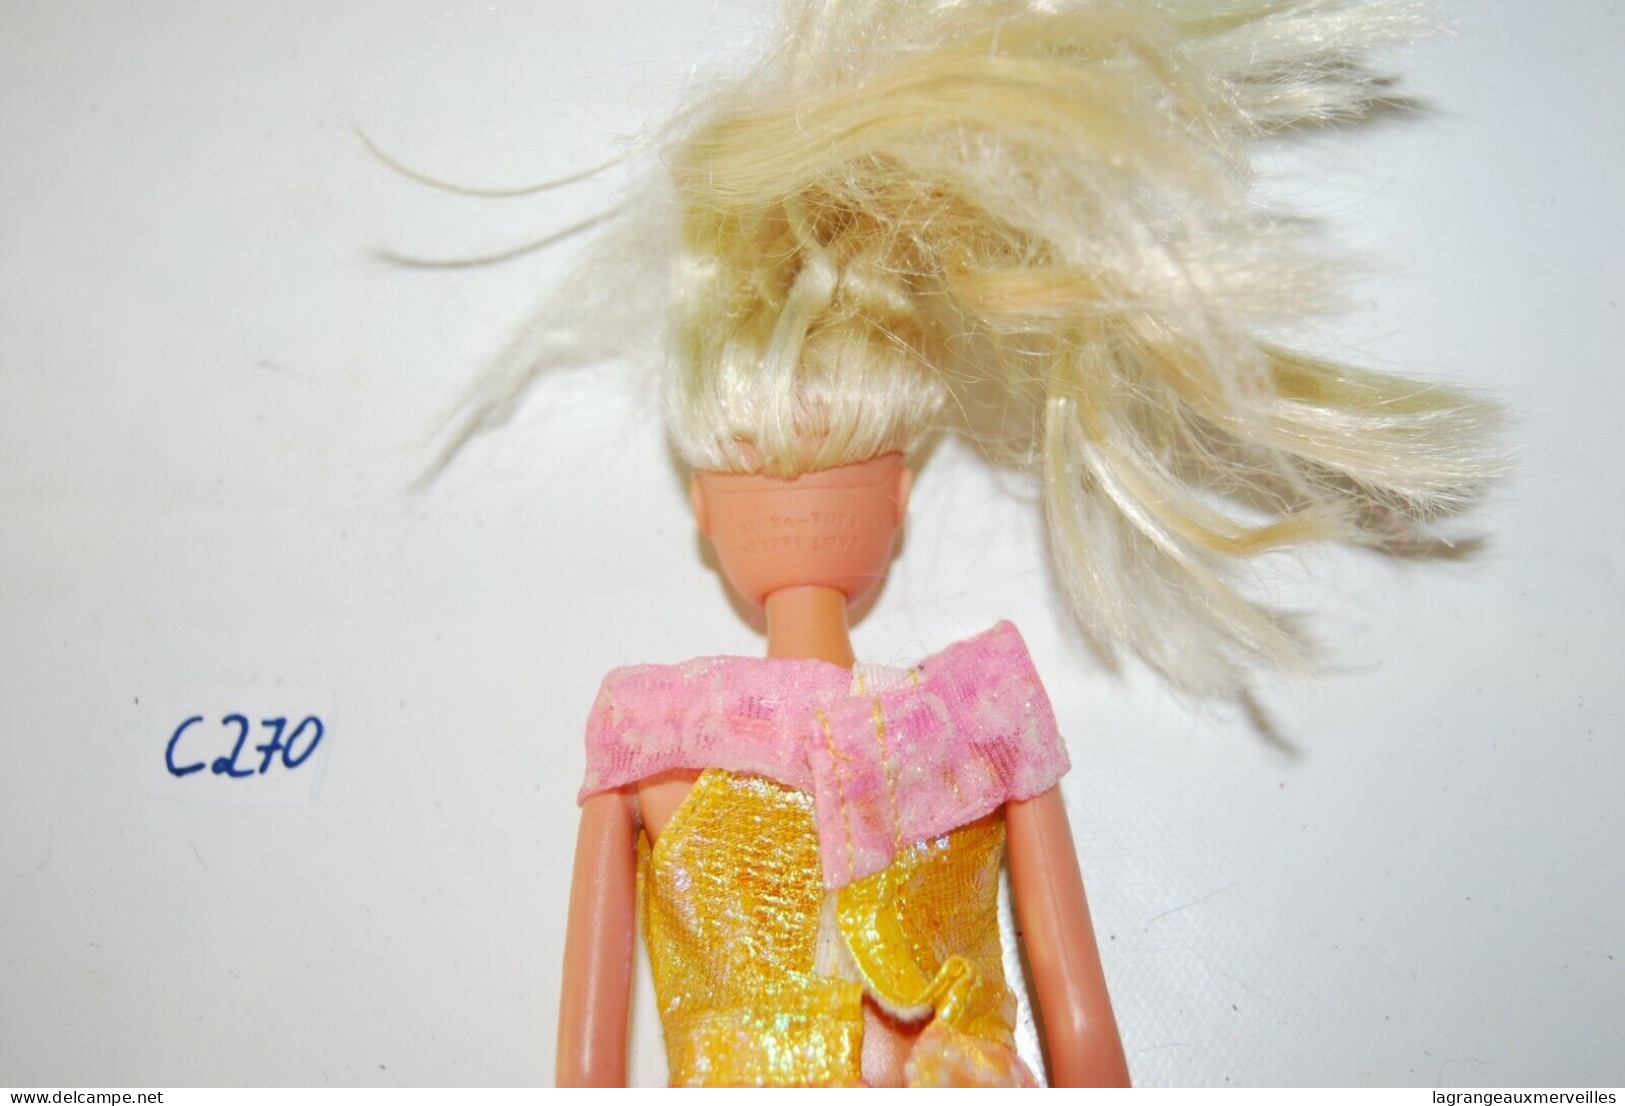 C270 Ancienne poupée de collection - Barbie - old toy 8